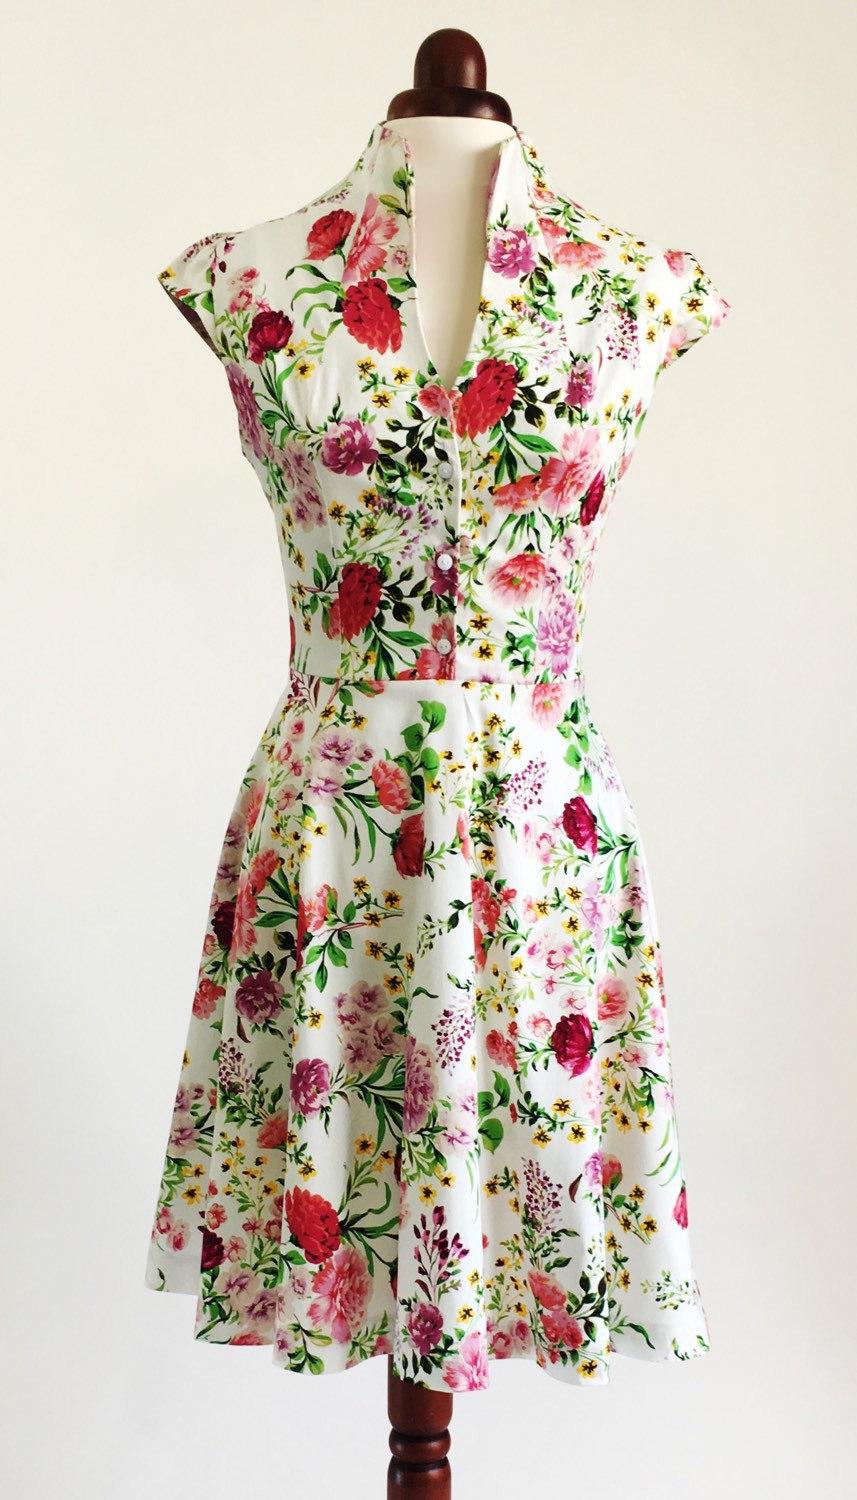 Mariage - Spring flower dress, floral dress, summer dress, vintage style dress, mid-length dress, cotton dress, 50s dress, garden party dress, SS16